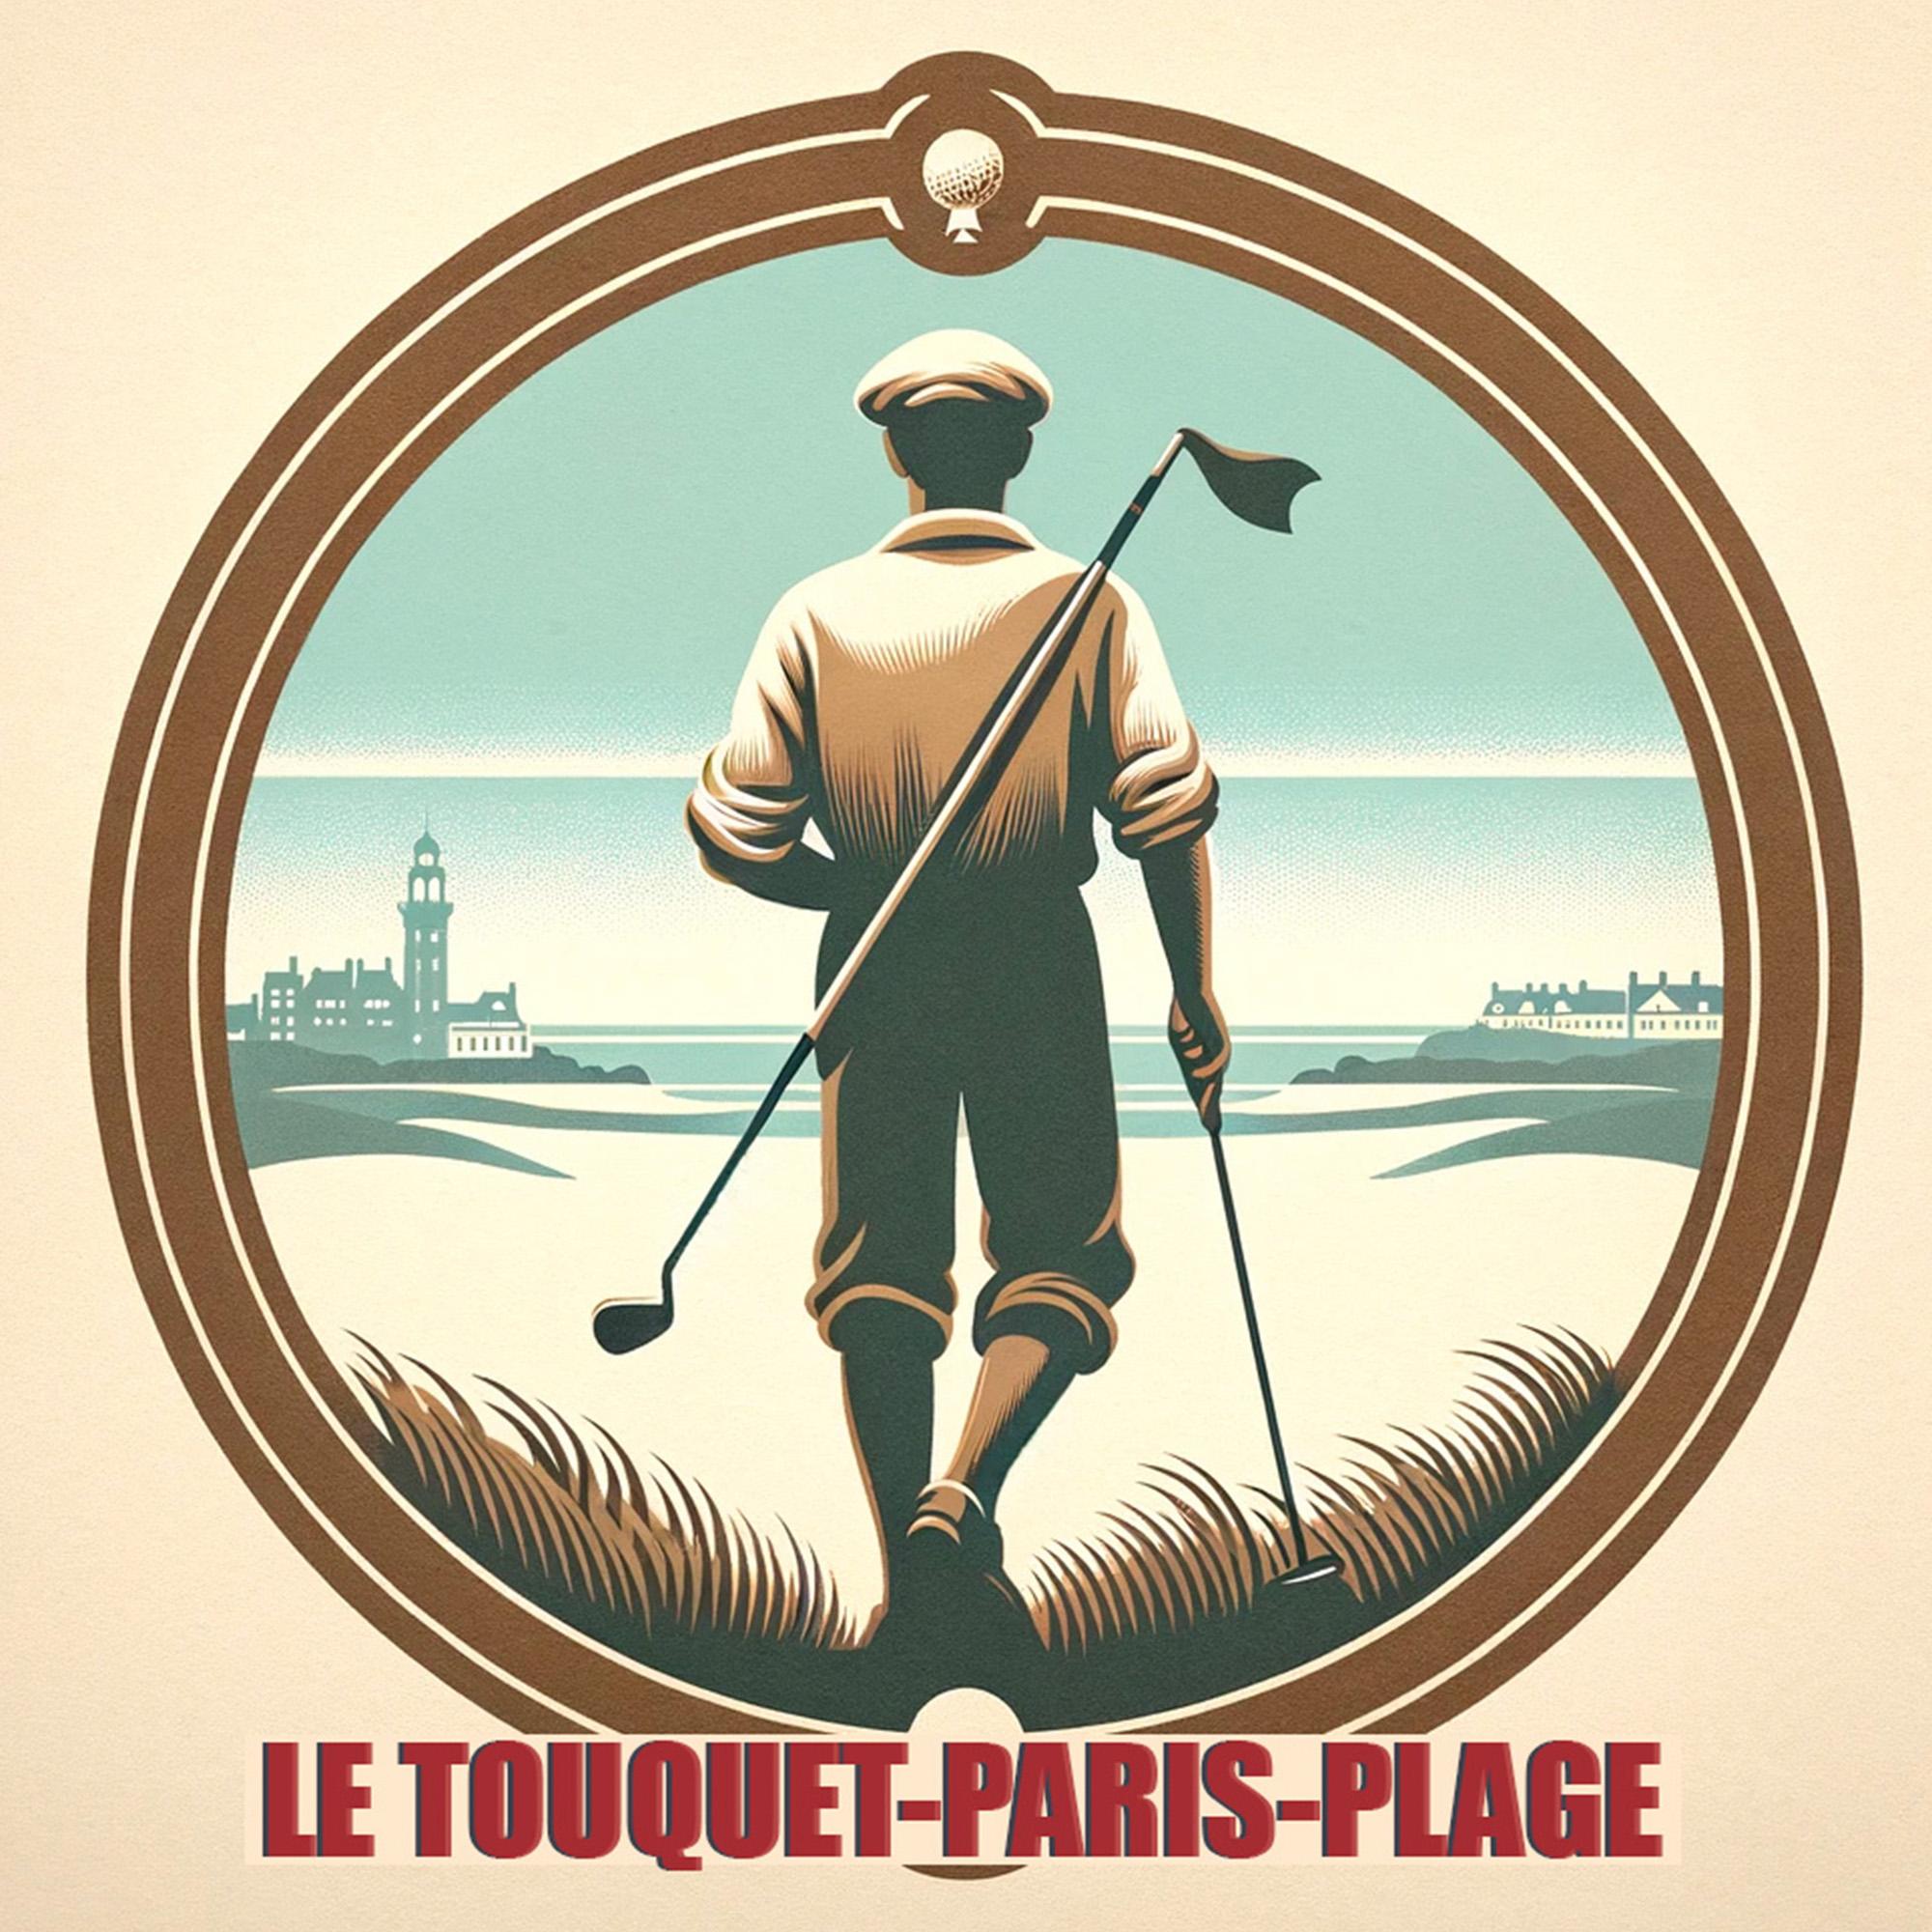 Le Touquet-Paris-Plage